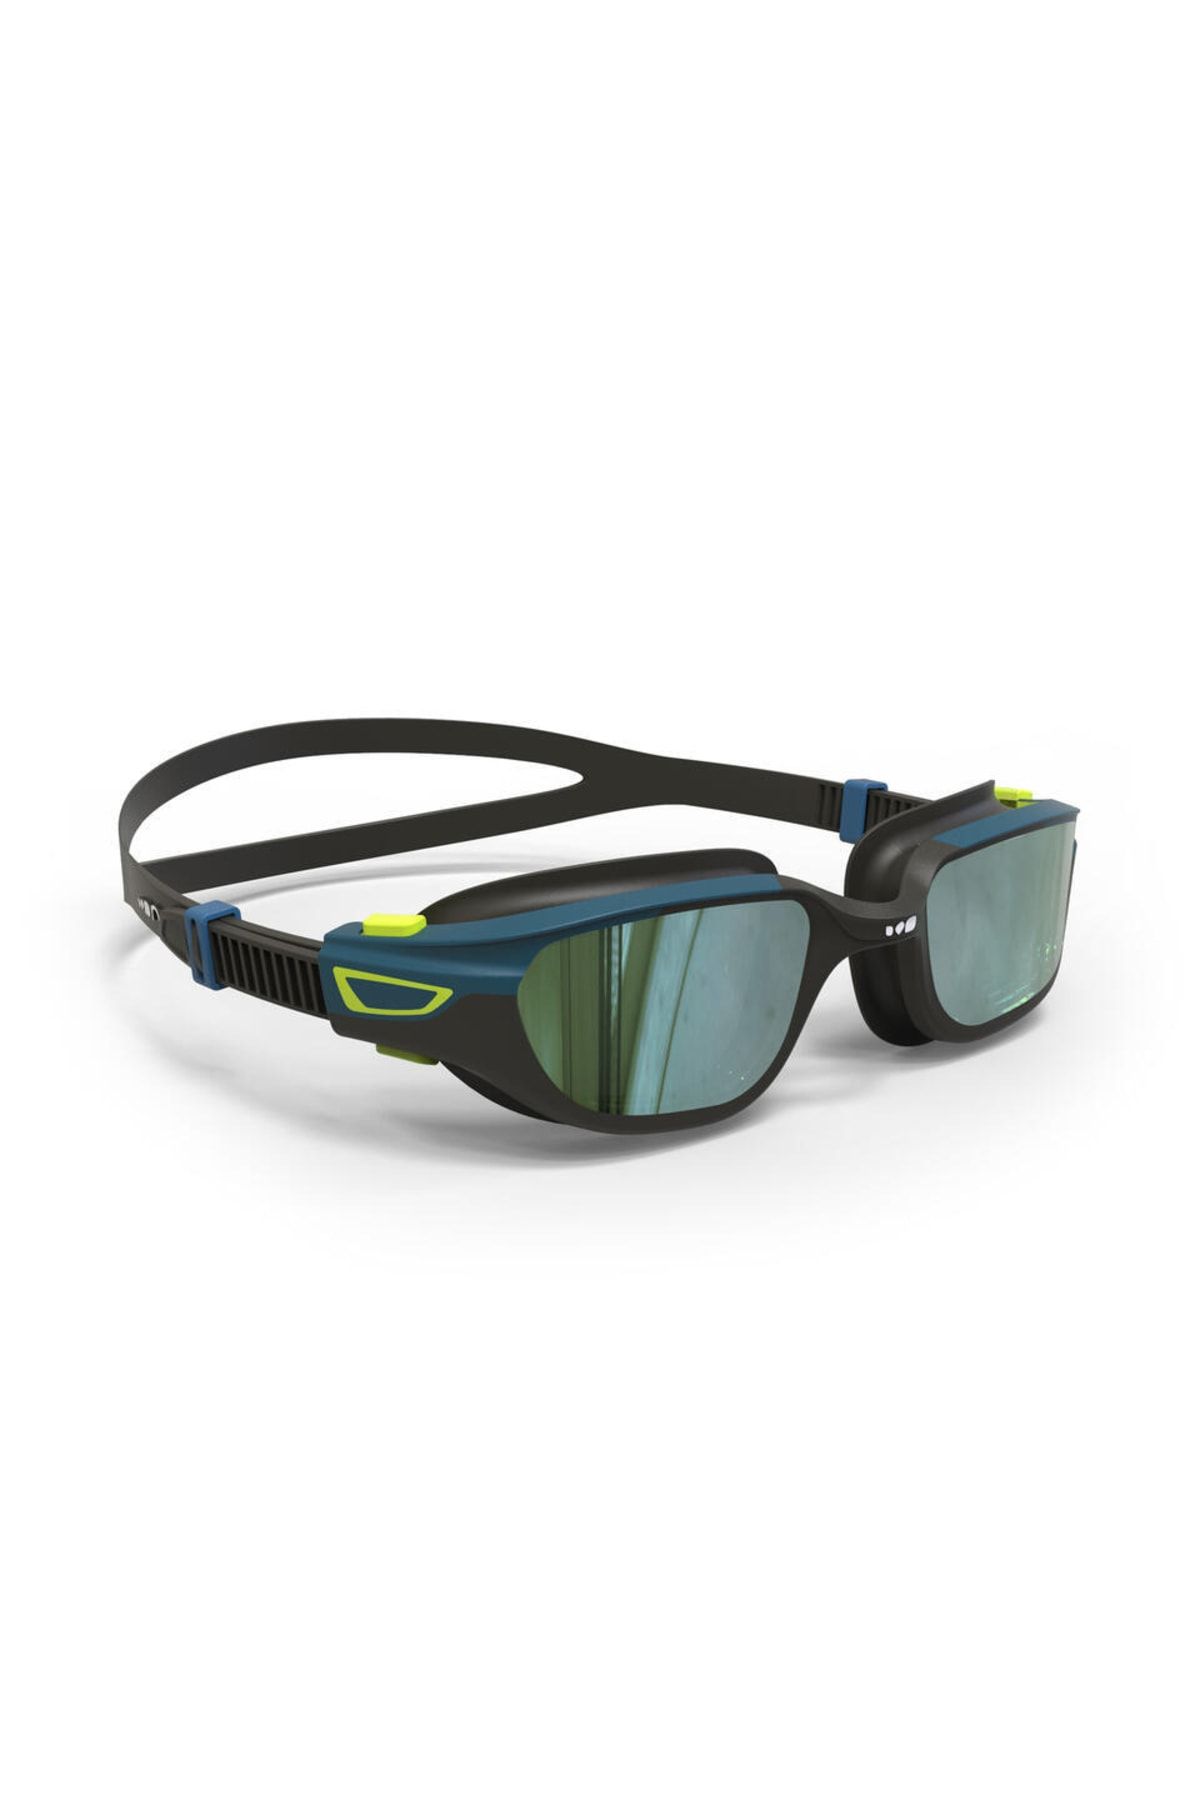 Decathlon - Yüzücü Gözlüğü Profesyonel Yüzücü Gözlüğü Yüzücü Havuz Gözlüğü L Boy Spirit